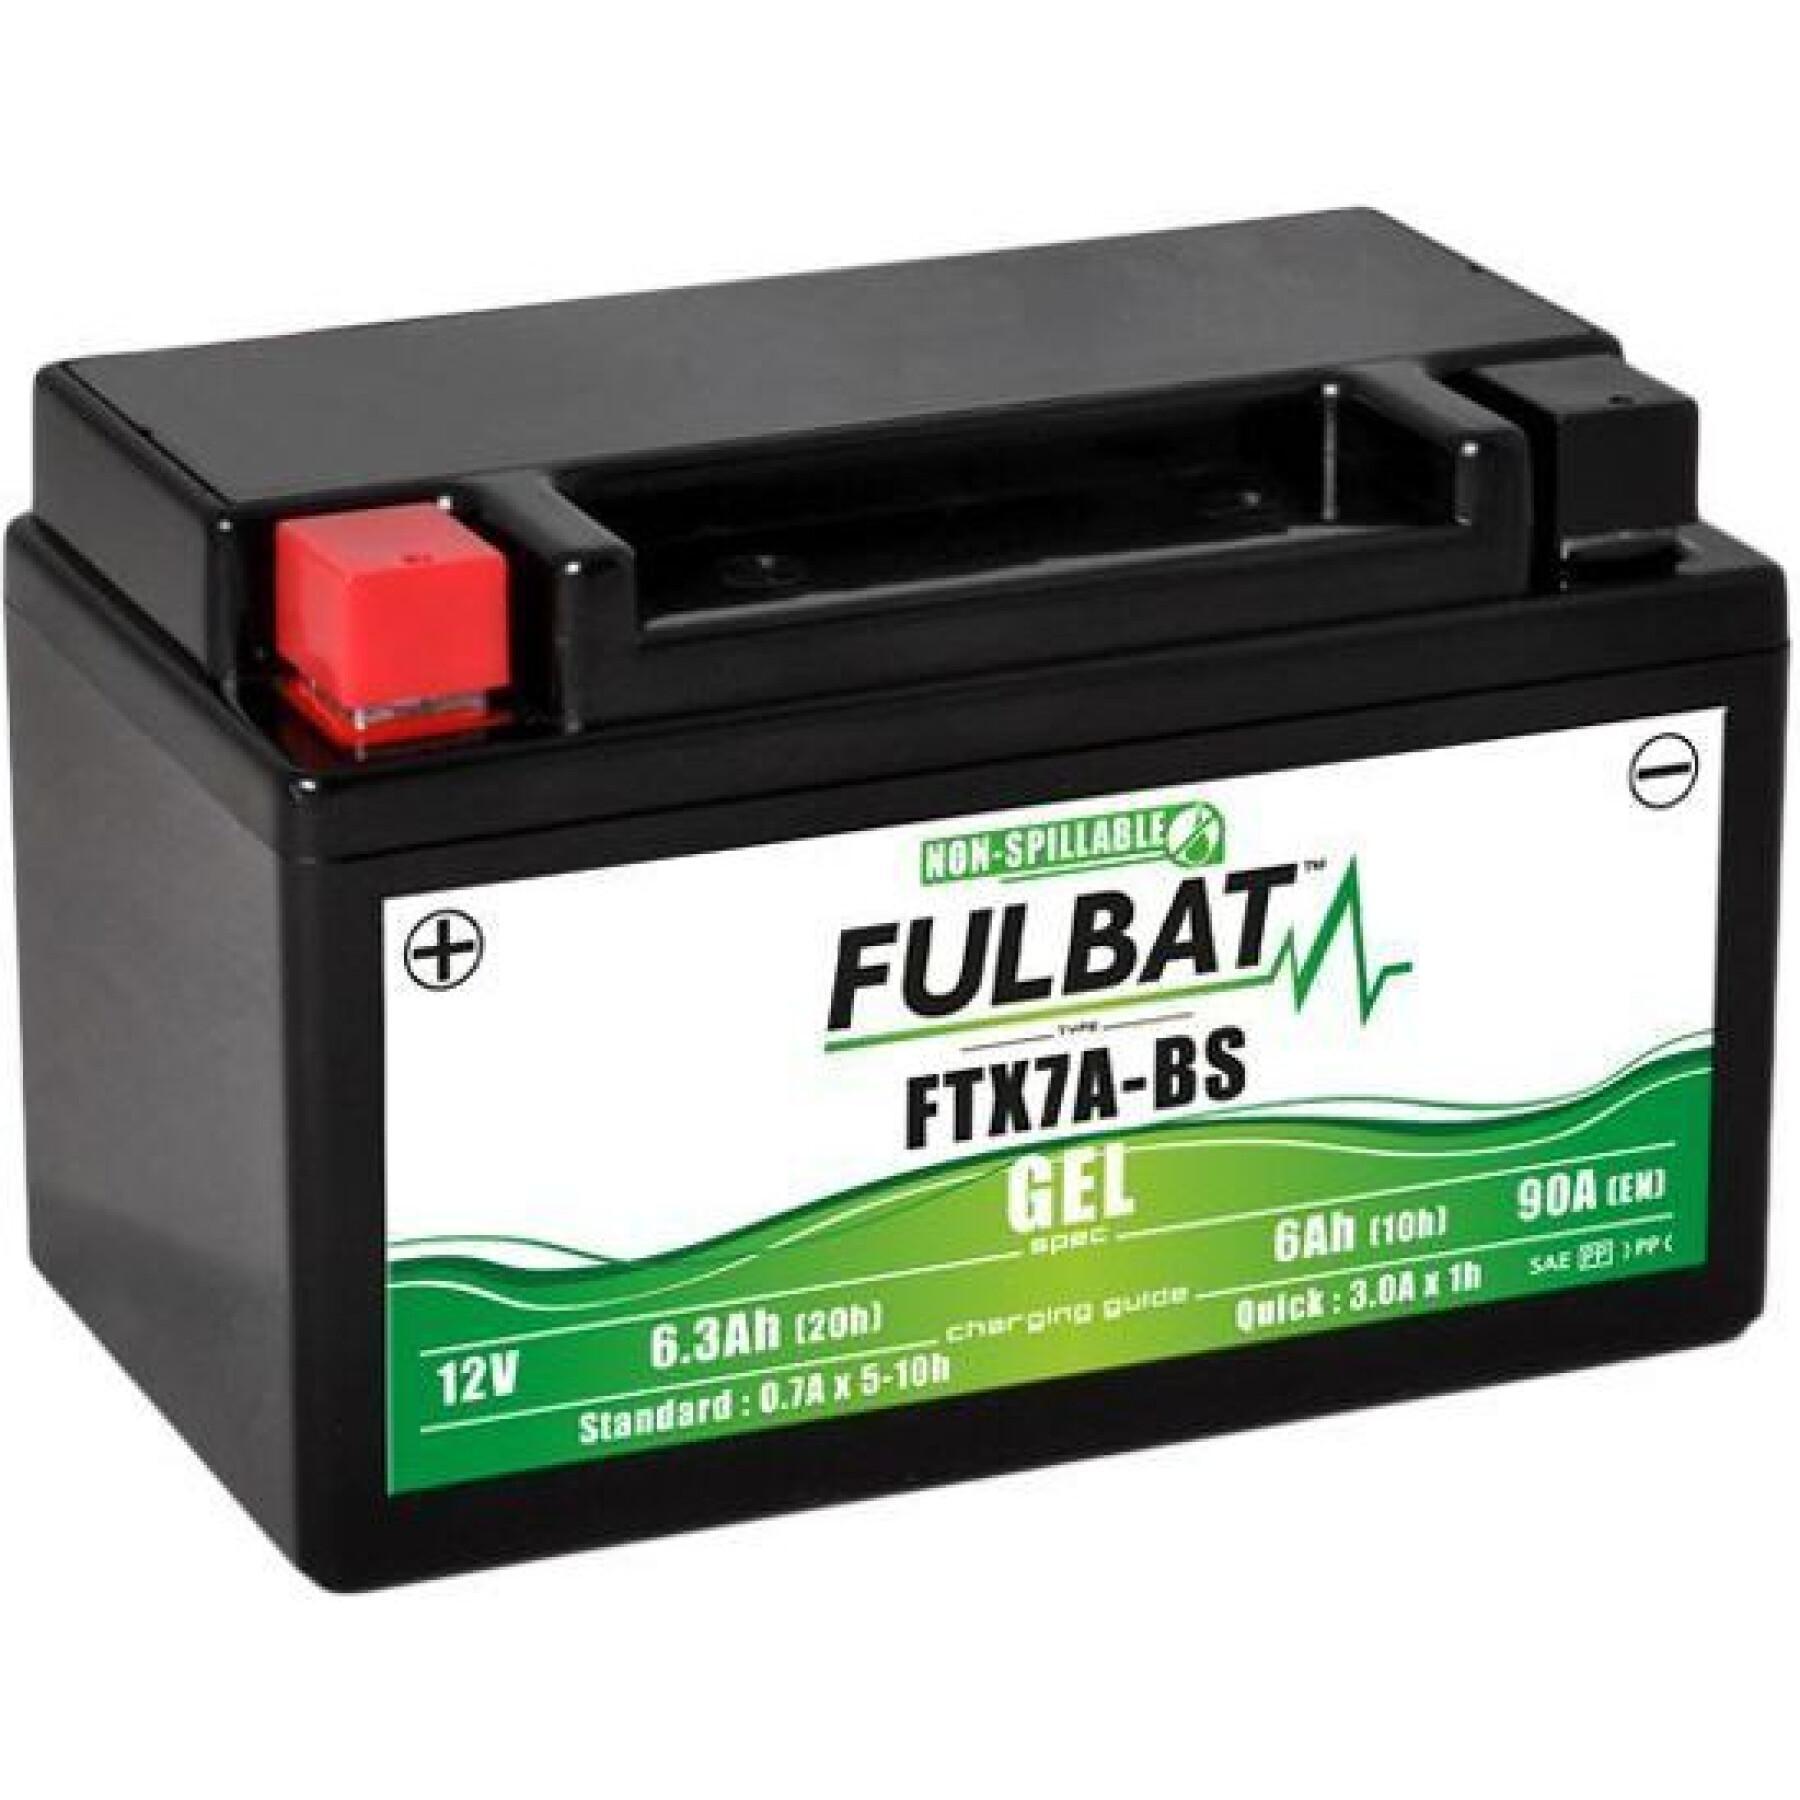 Battery Fulbat FTX7A-BS Gel